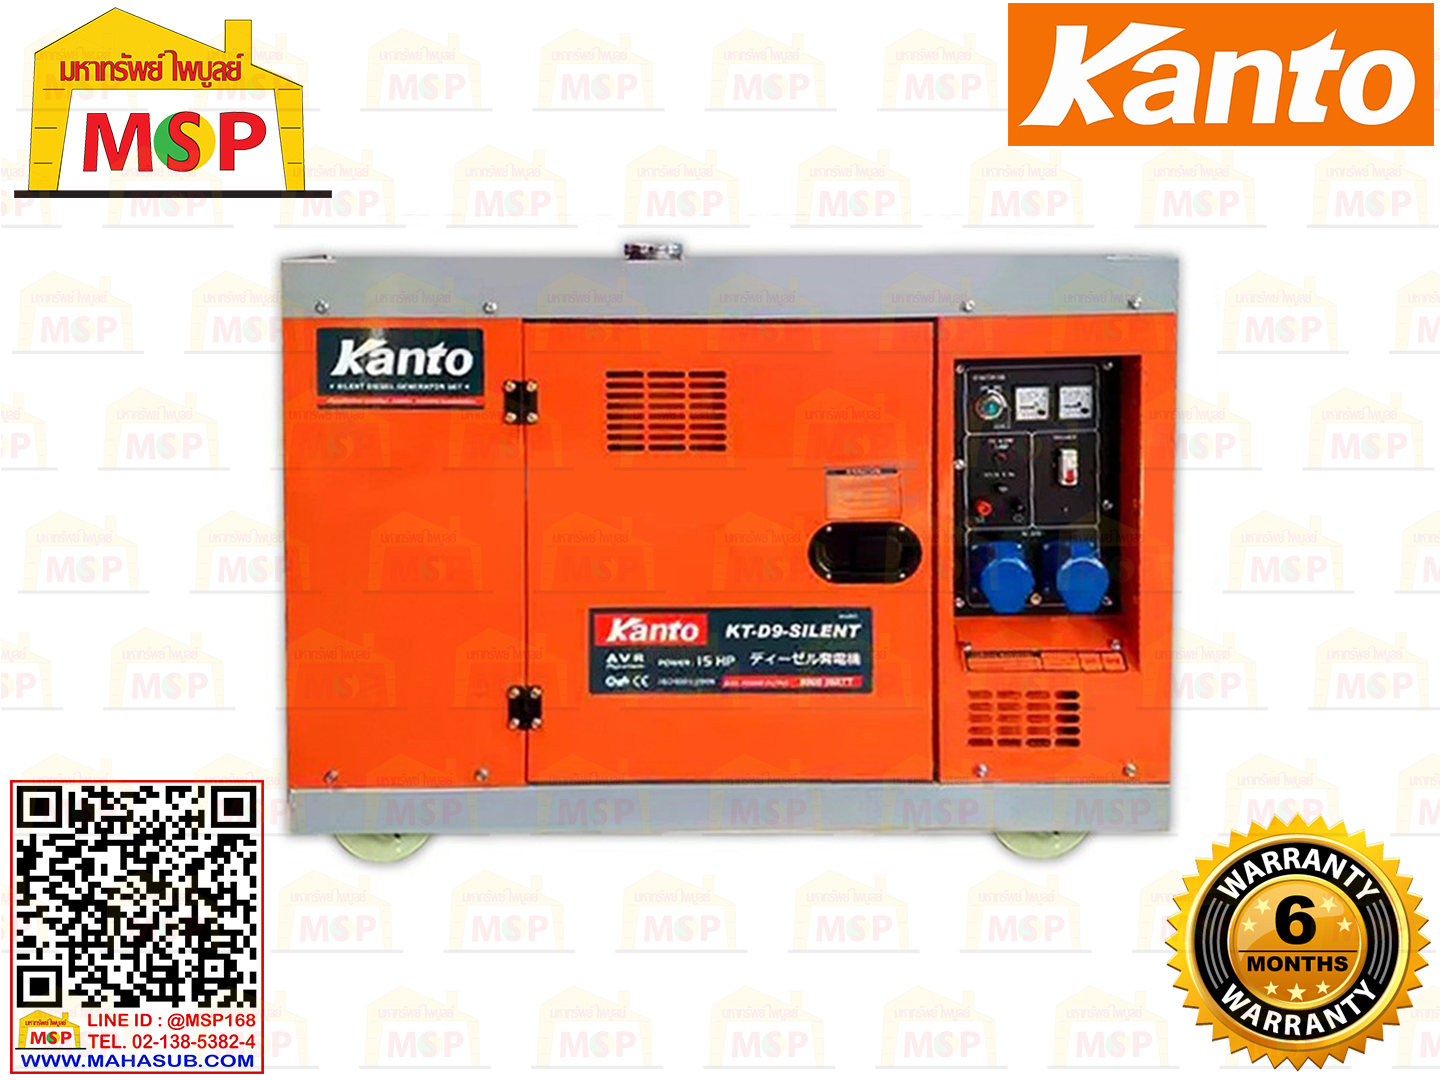 Kanto เครื่องปั่นไฟใช้ดีเซล KT-D9-SILENT 9.9 KW 220V กุญแจ #NV